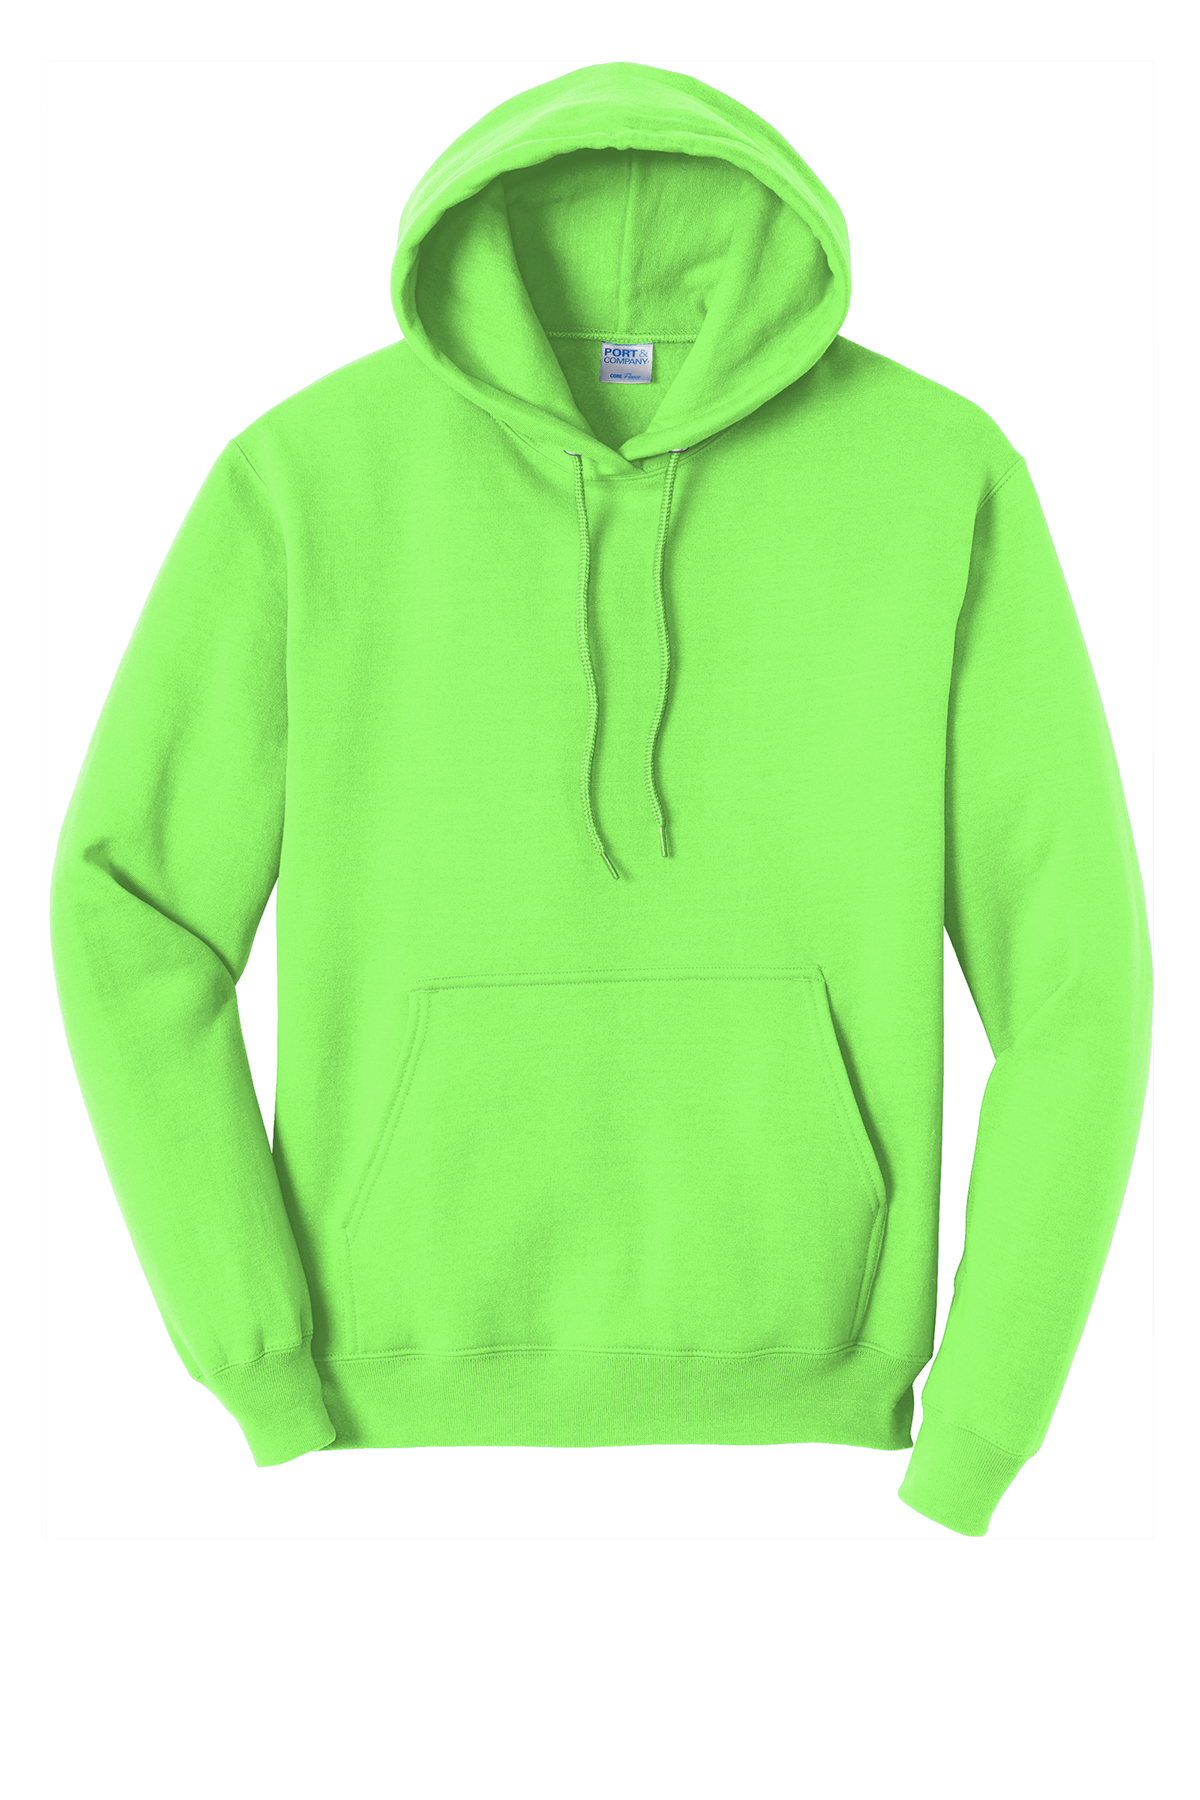 Green Hoodies & Sweatshirts